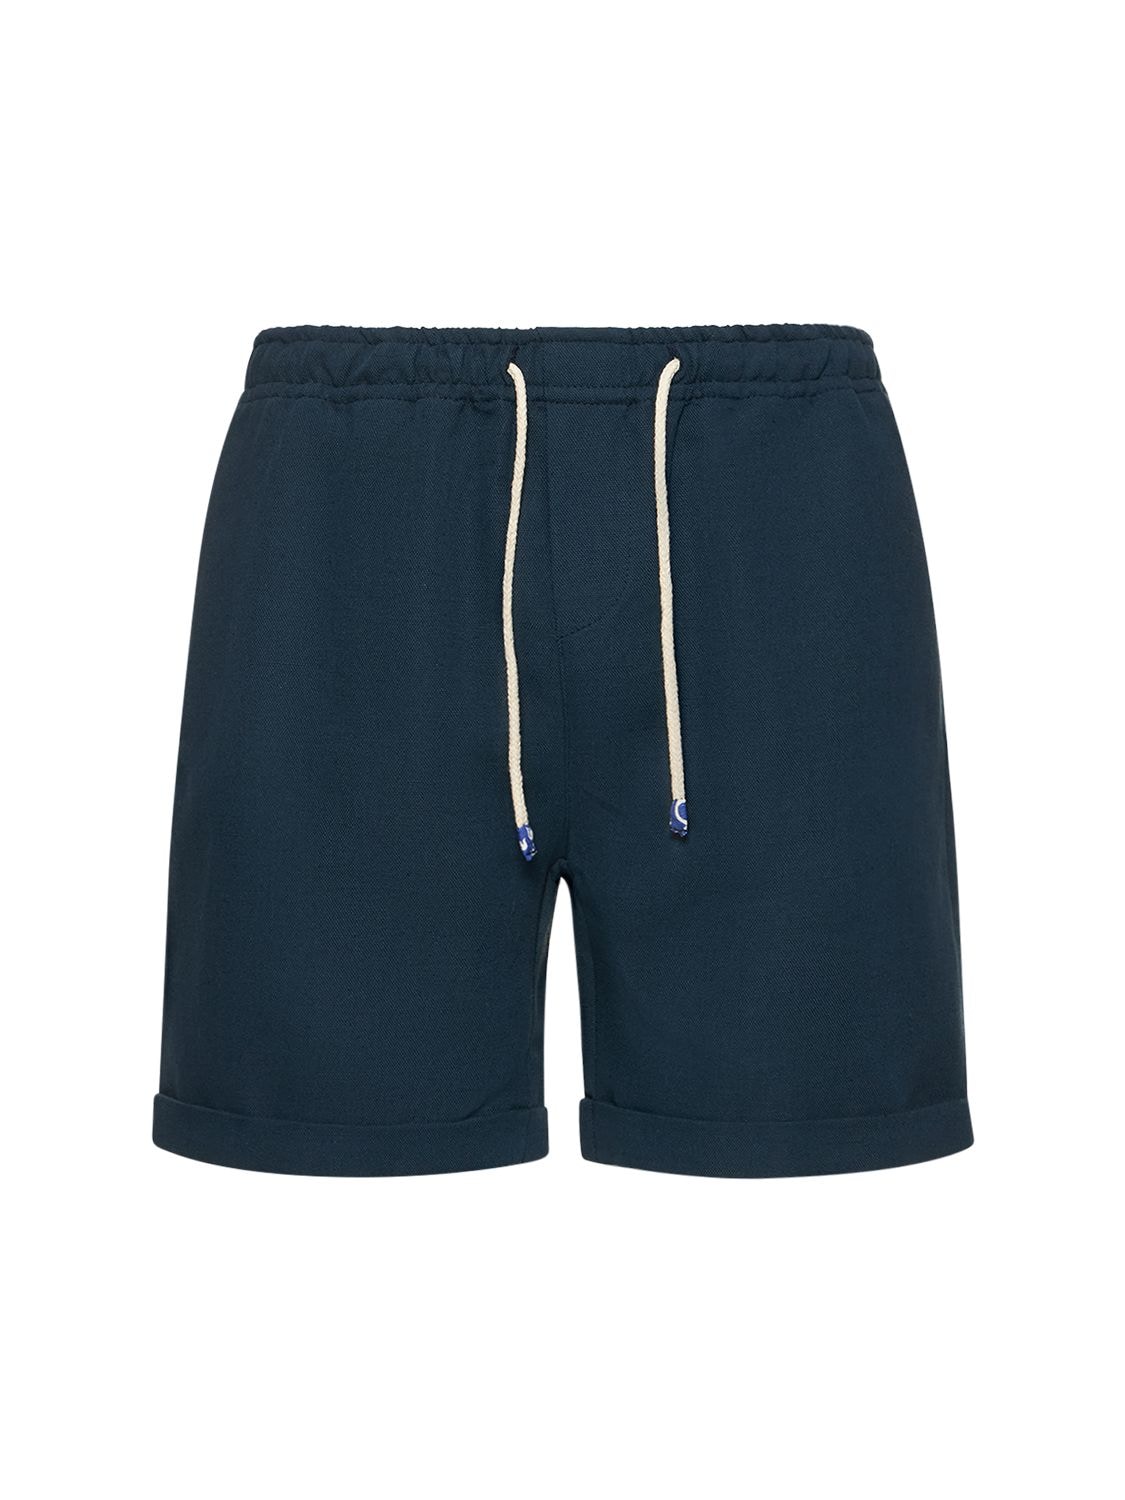 Pantabasket Linen Shorts – MEN > CLOTHING > SHORTS